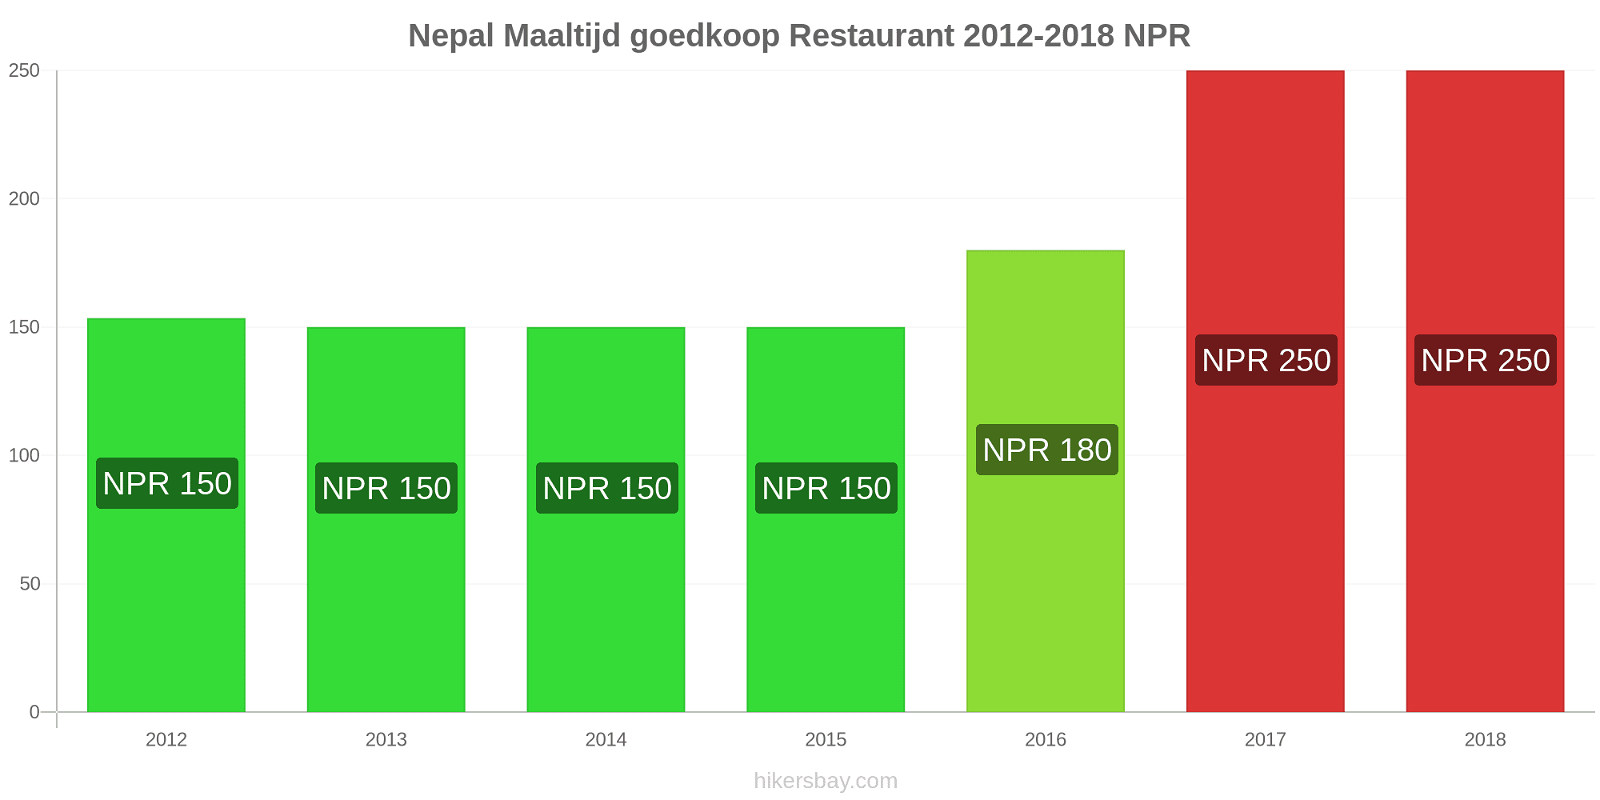 Nepal prijswijzigingen Maaltijd in een goedkoop restaurant hikersbay.com